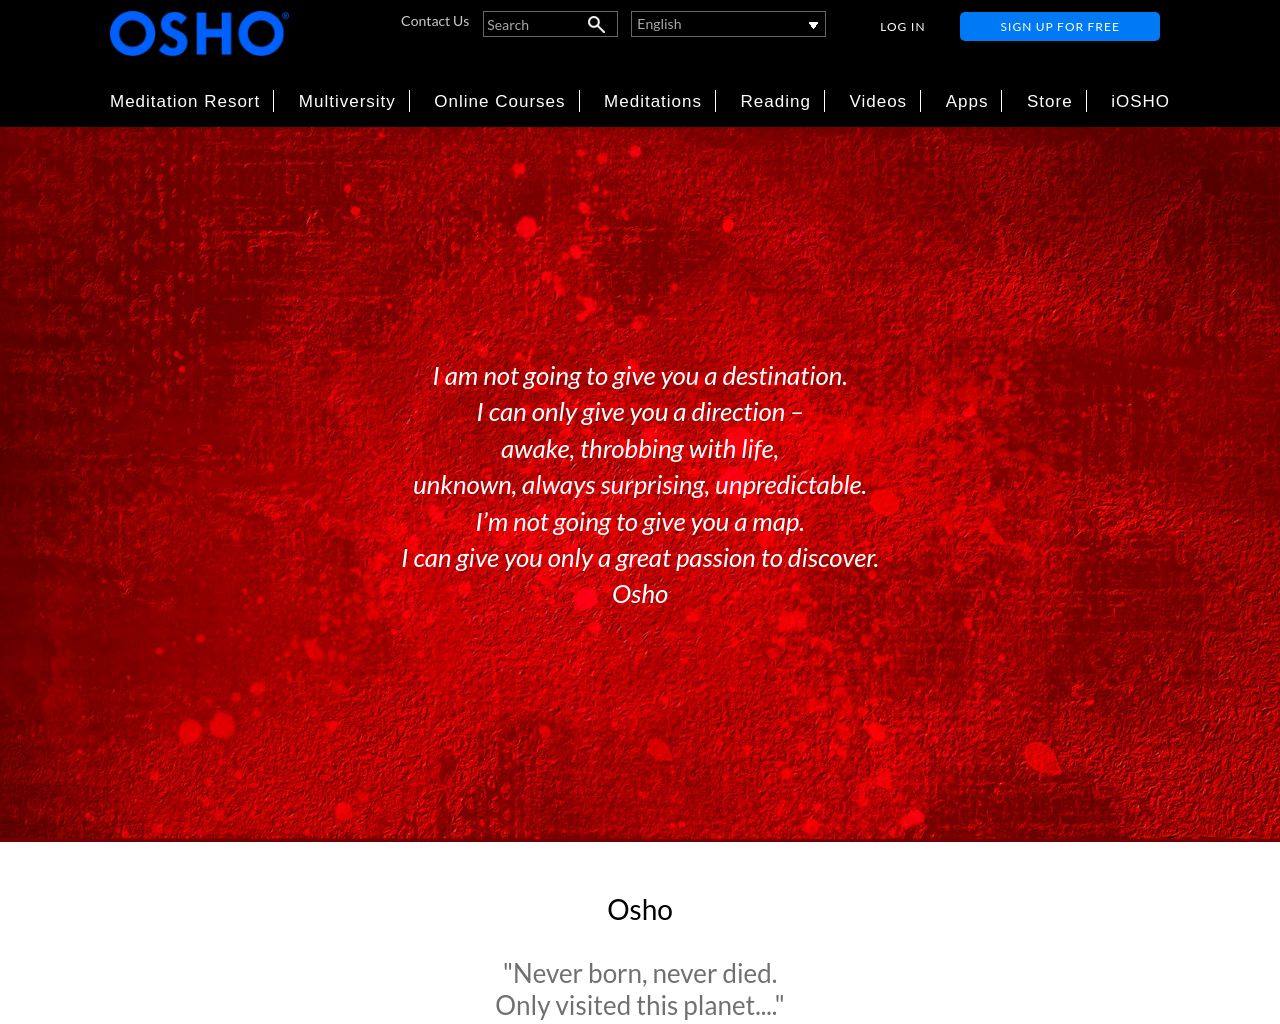 osho.com